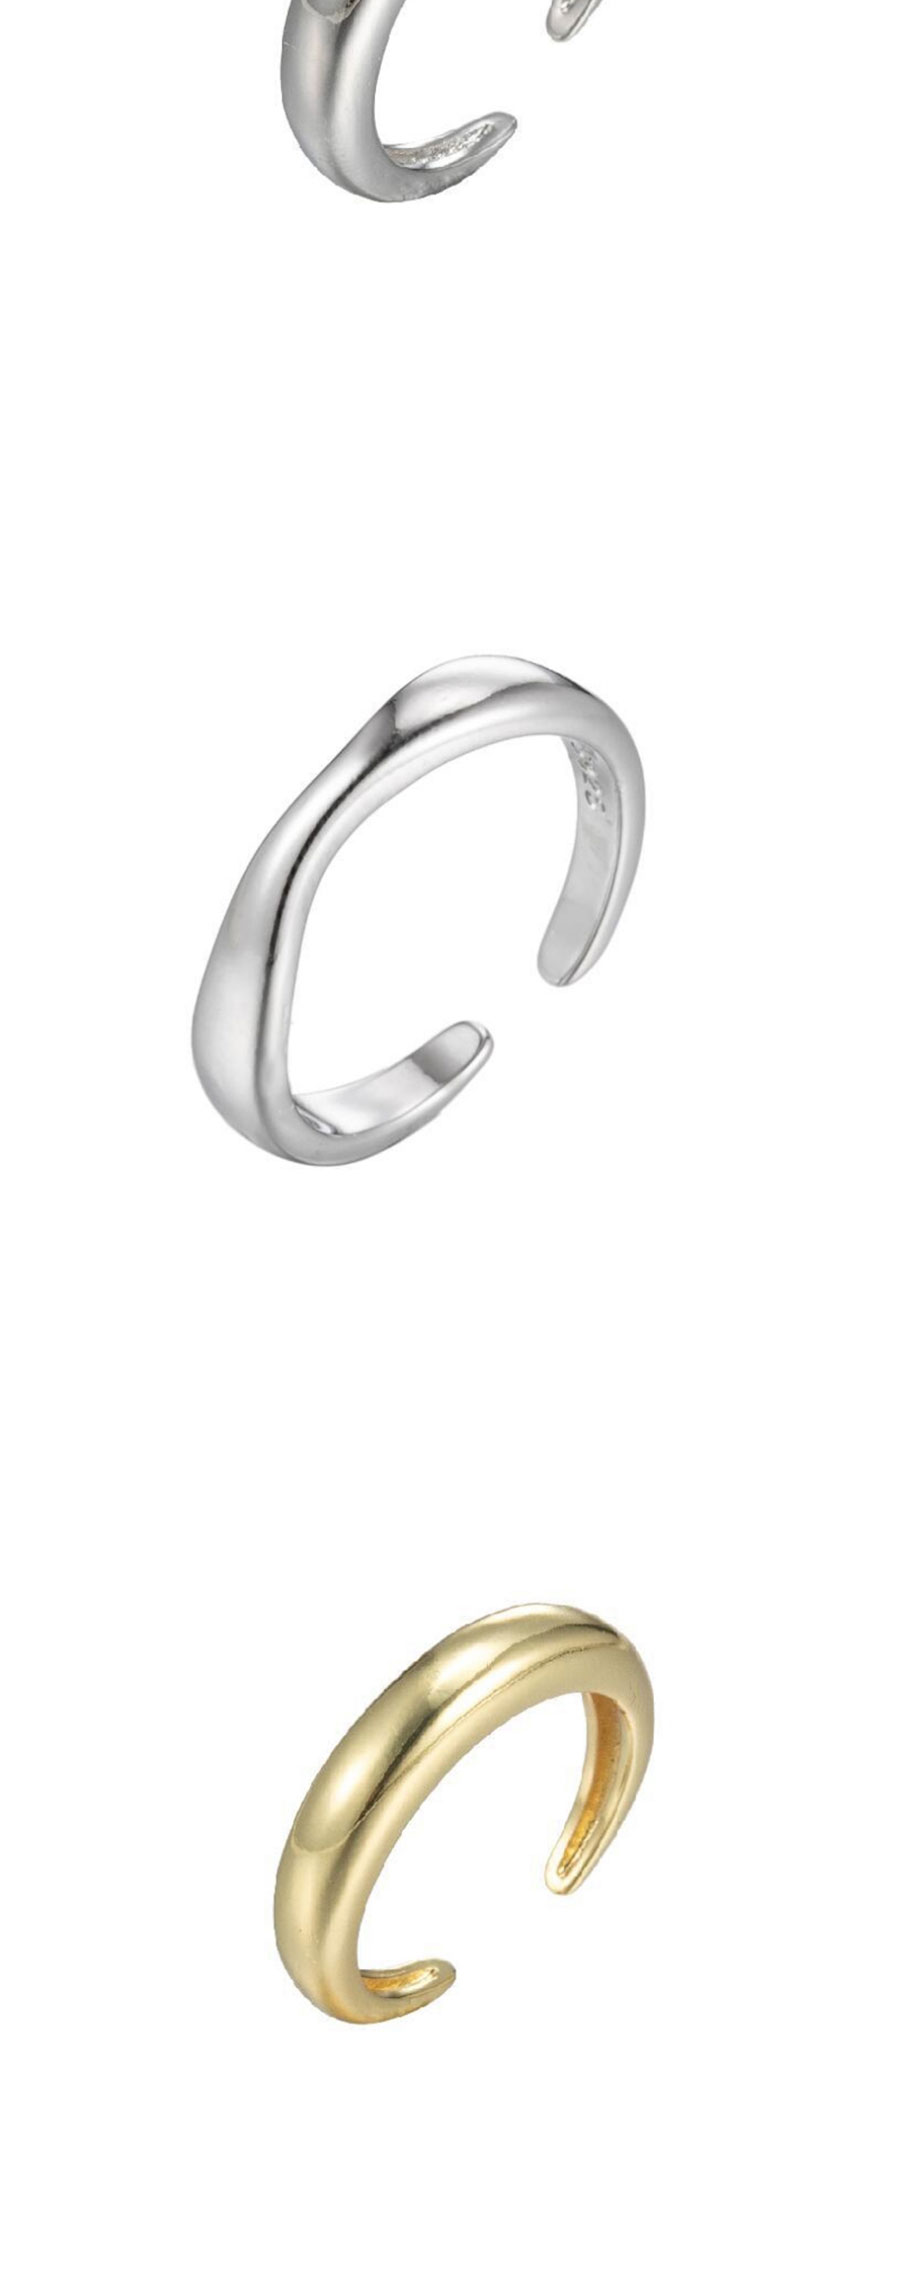 Fashion Golden-8 Stainless Steel Irregular Drop Opening Ring,Rings